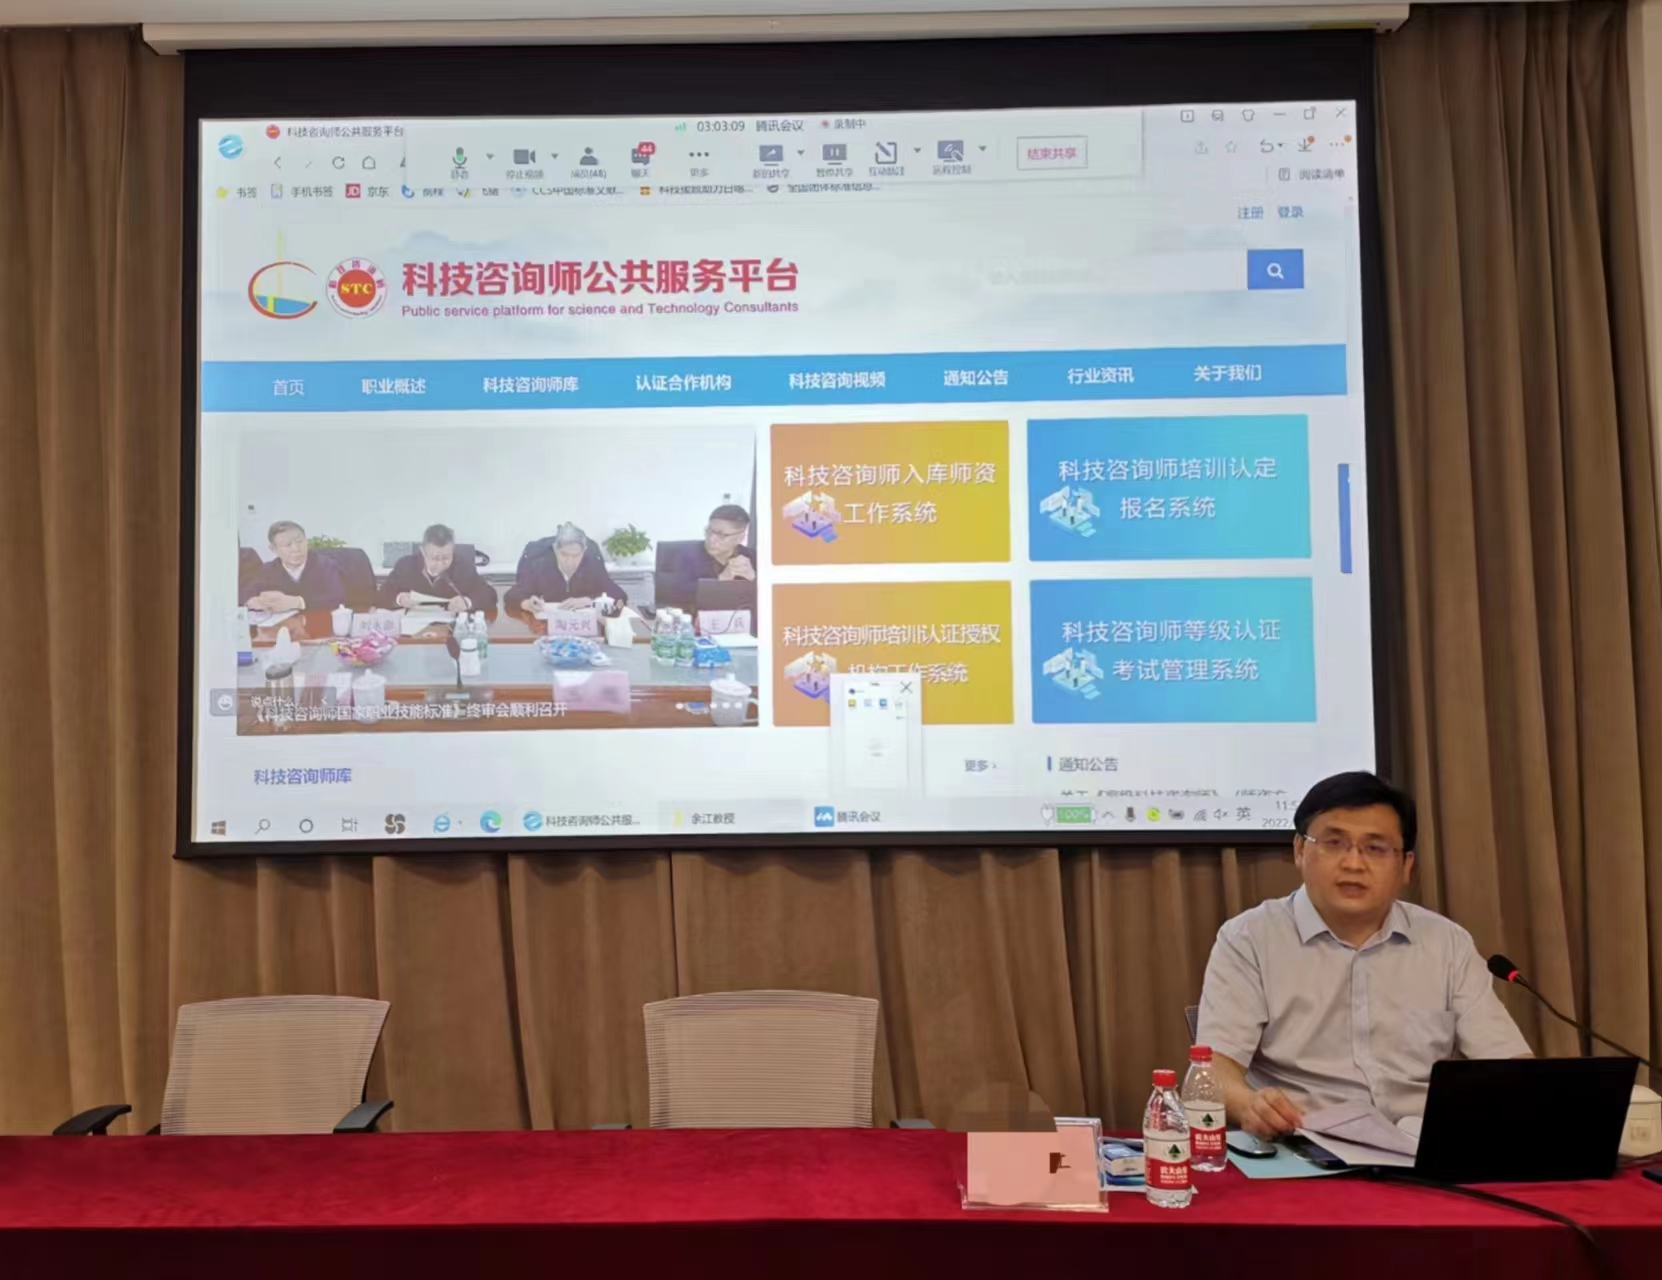 全国首期《高级科技咨询师》国家职业技能培训班 在京举办